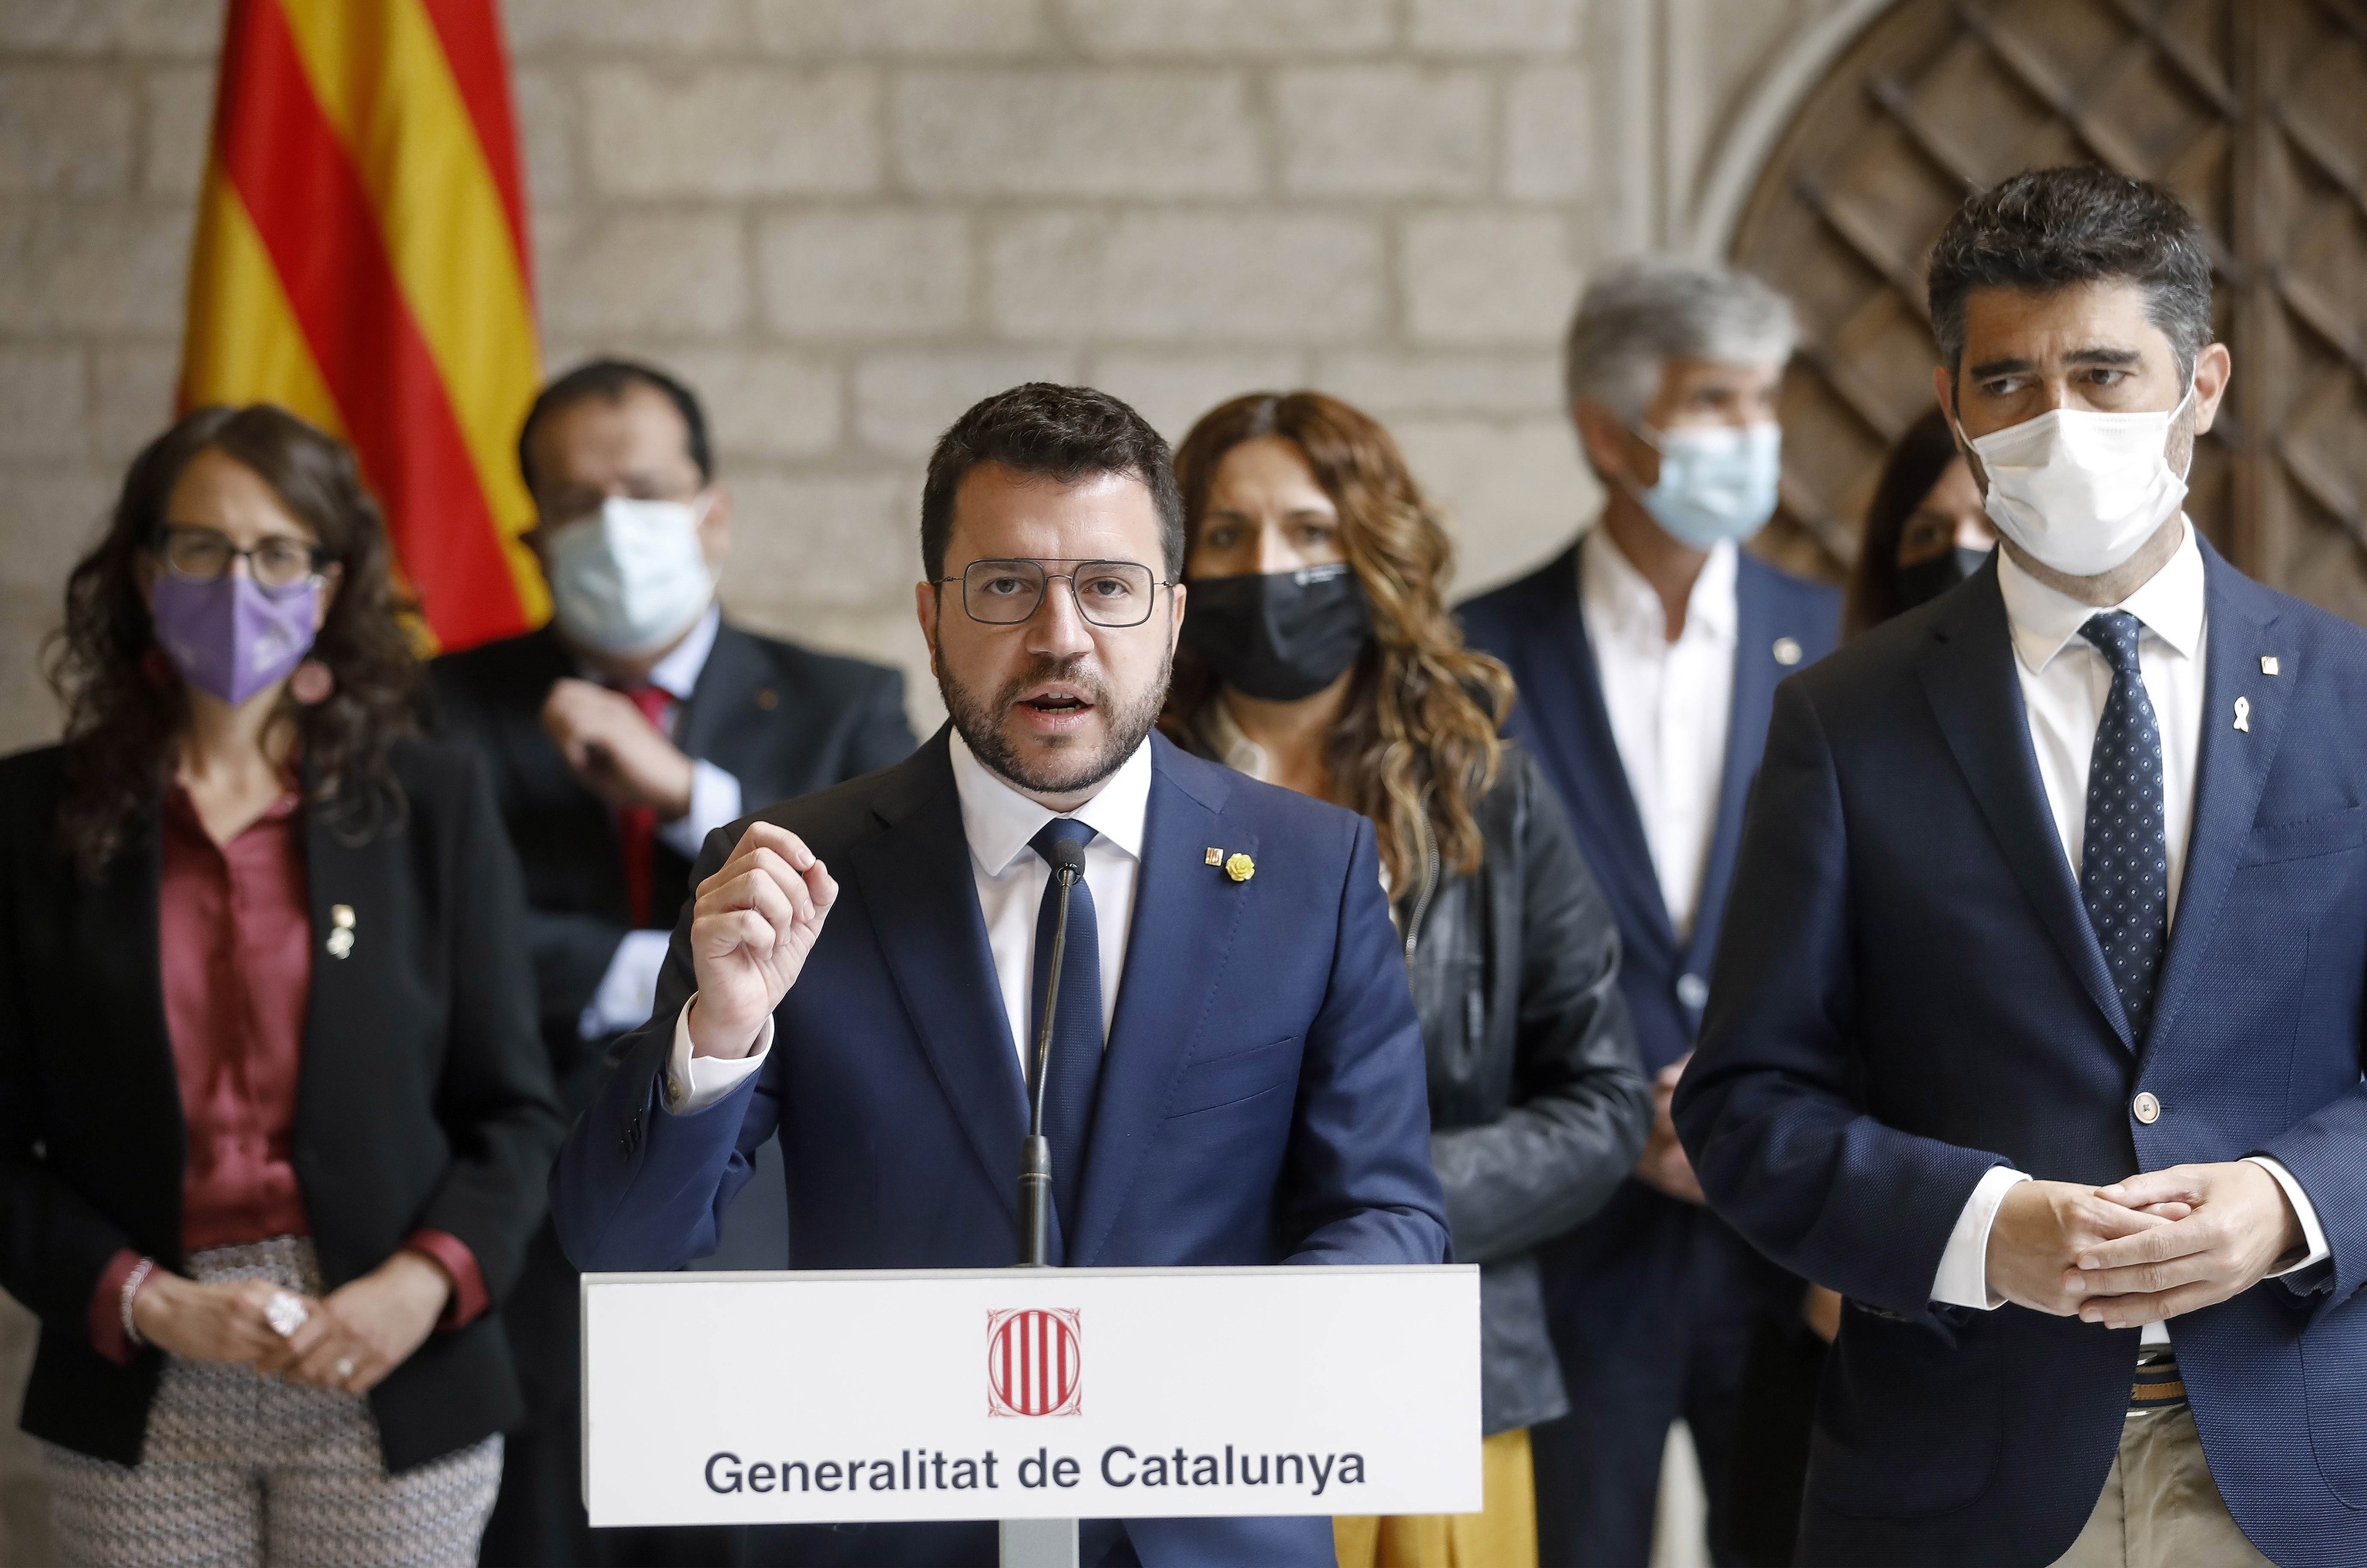 Aragons comparece junto a los miembros de su Gobierno.